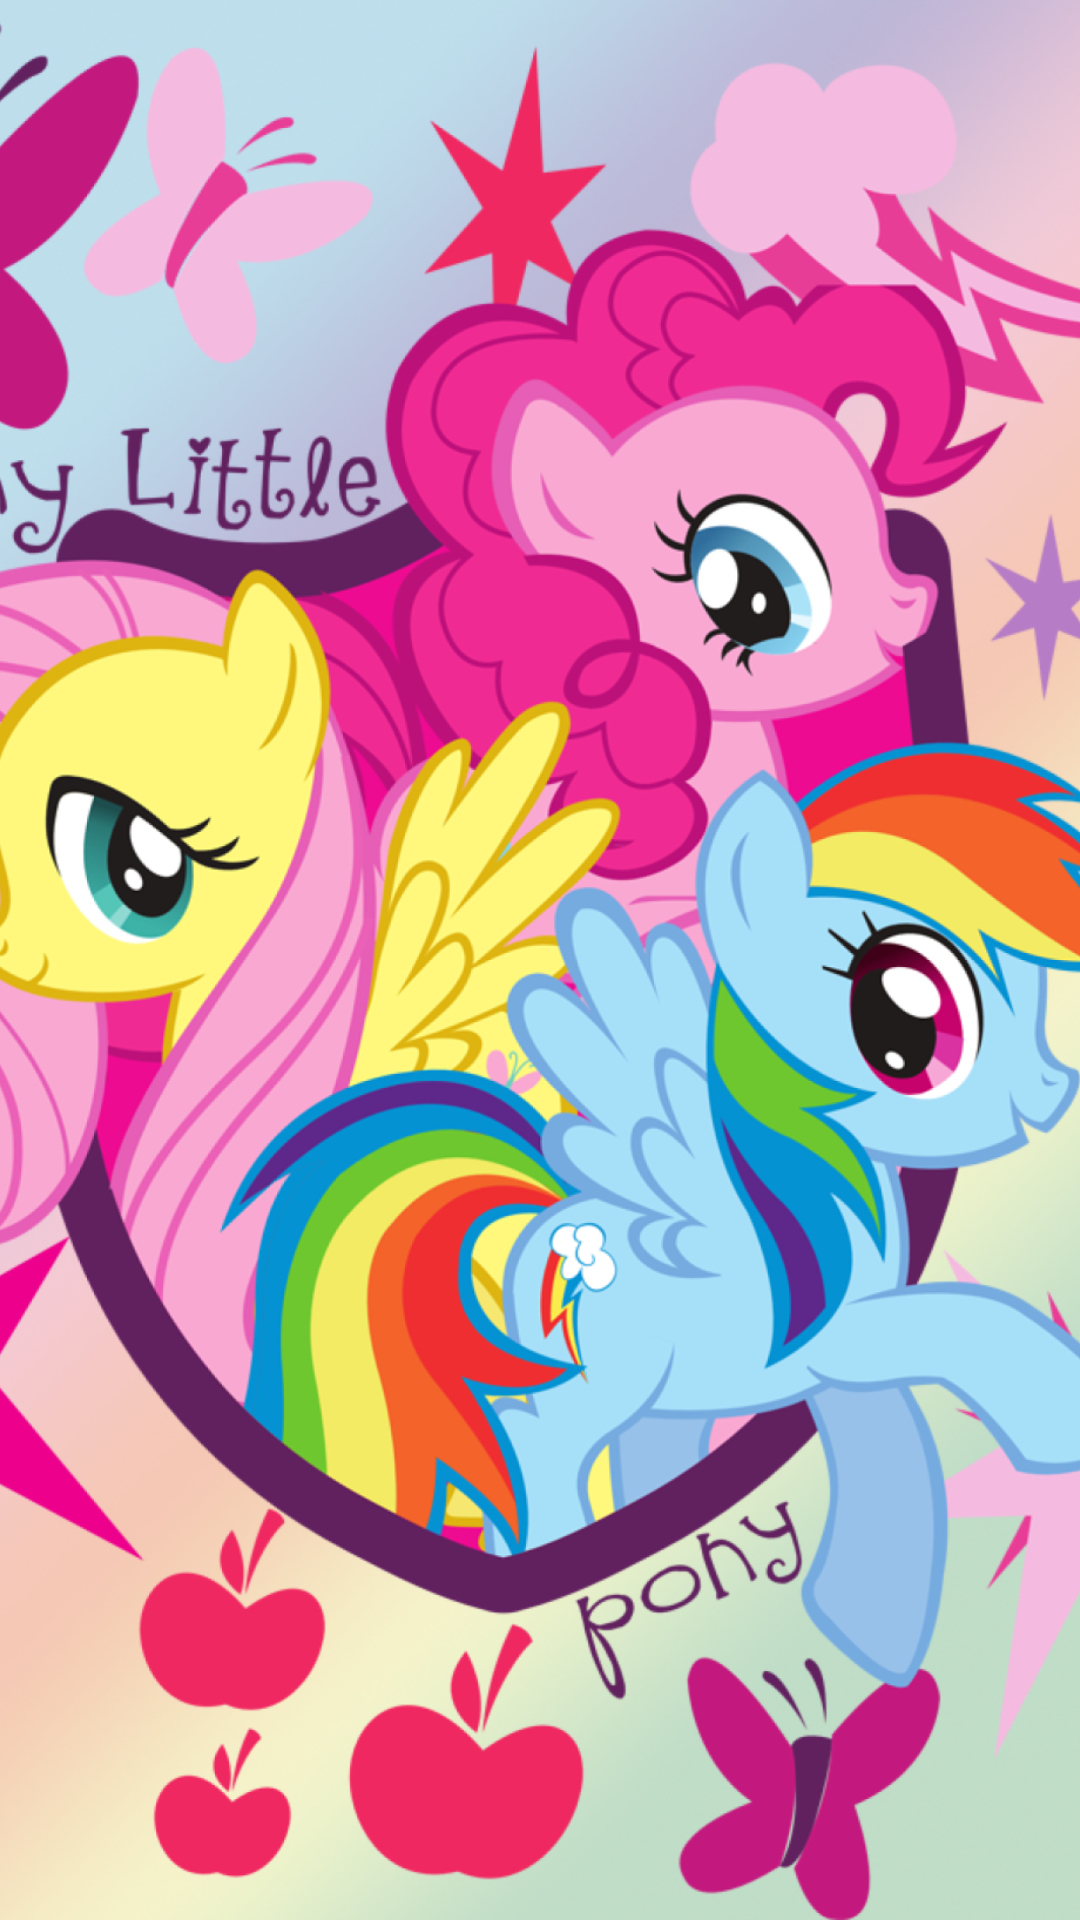 My Little Pony Pinkie Pie wallpaper 1080x1920